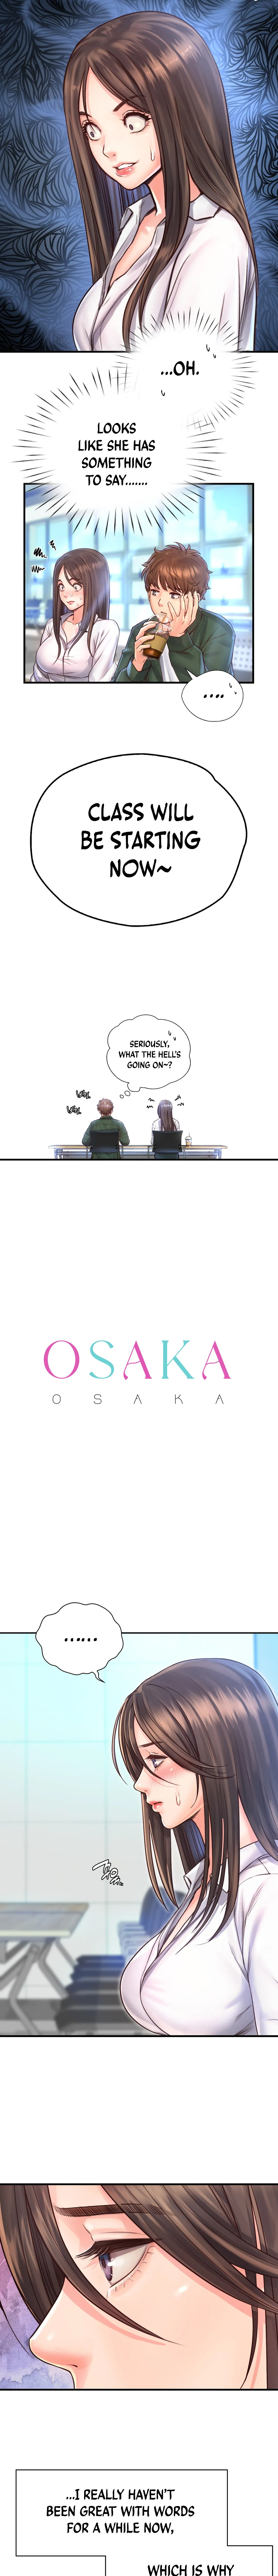 Osaka - Chapter 11 Page 2